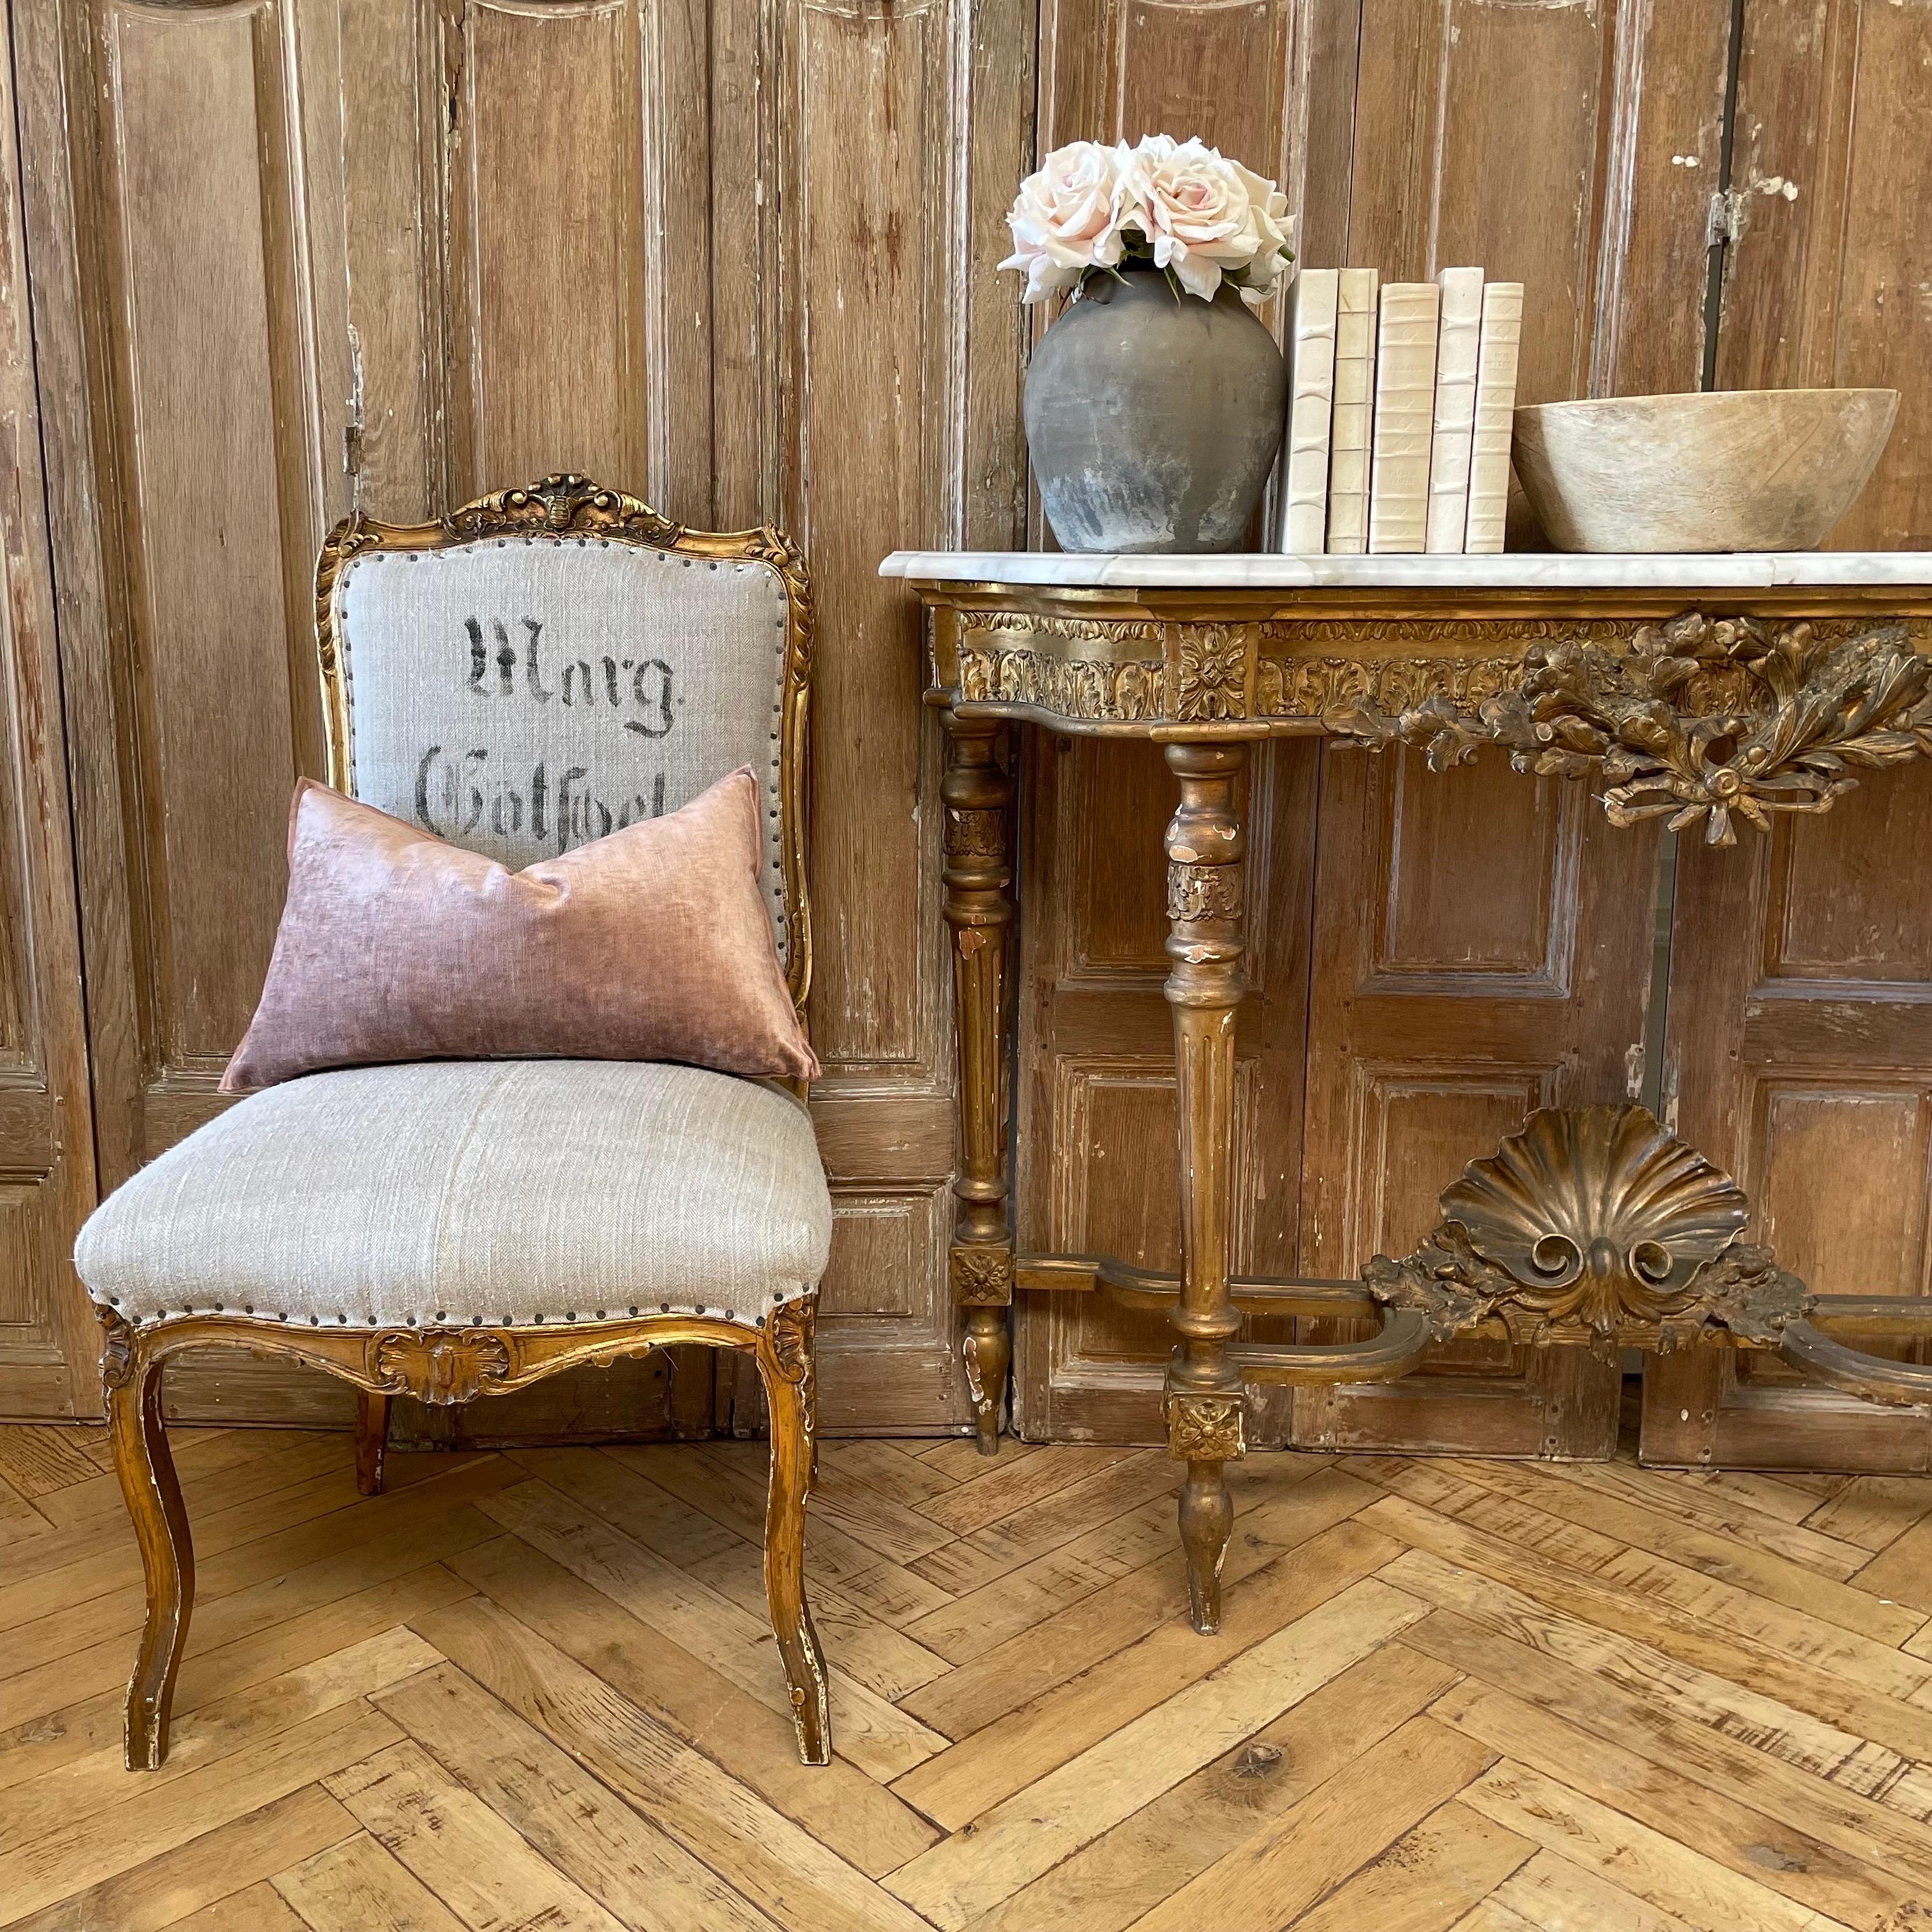 Chaise ancienne en bois doré de style Louis XV français avec rembourrage sur mesure en sac de grain européen vintage avec estampillage original.  La finition en bois doré est d'origine avec de subtiles éraflures et altérations.
Lin lourd de couleur